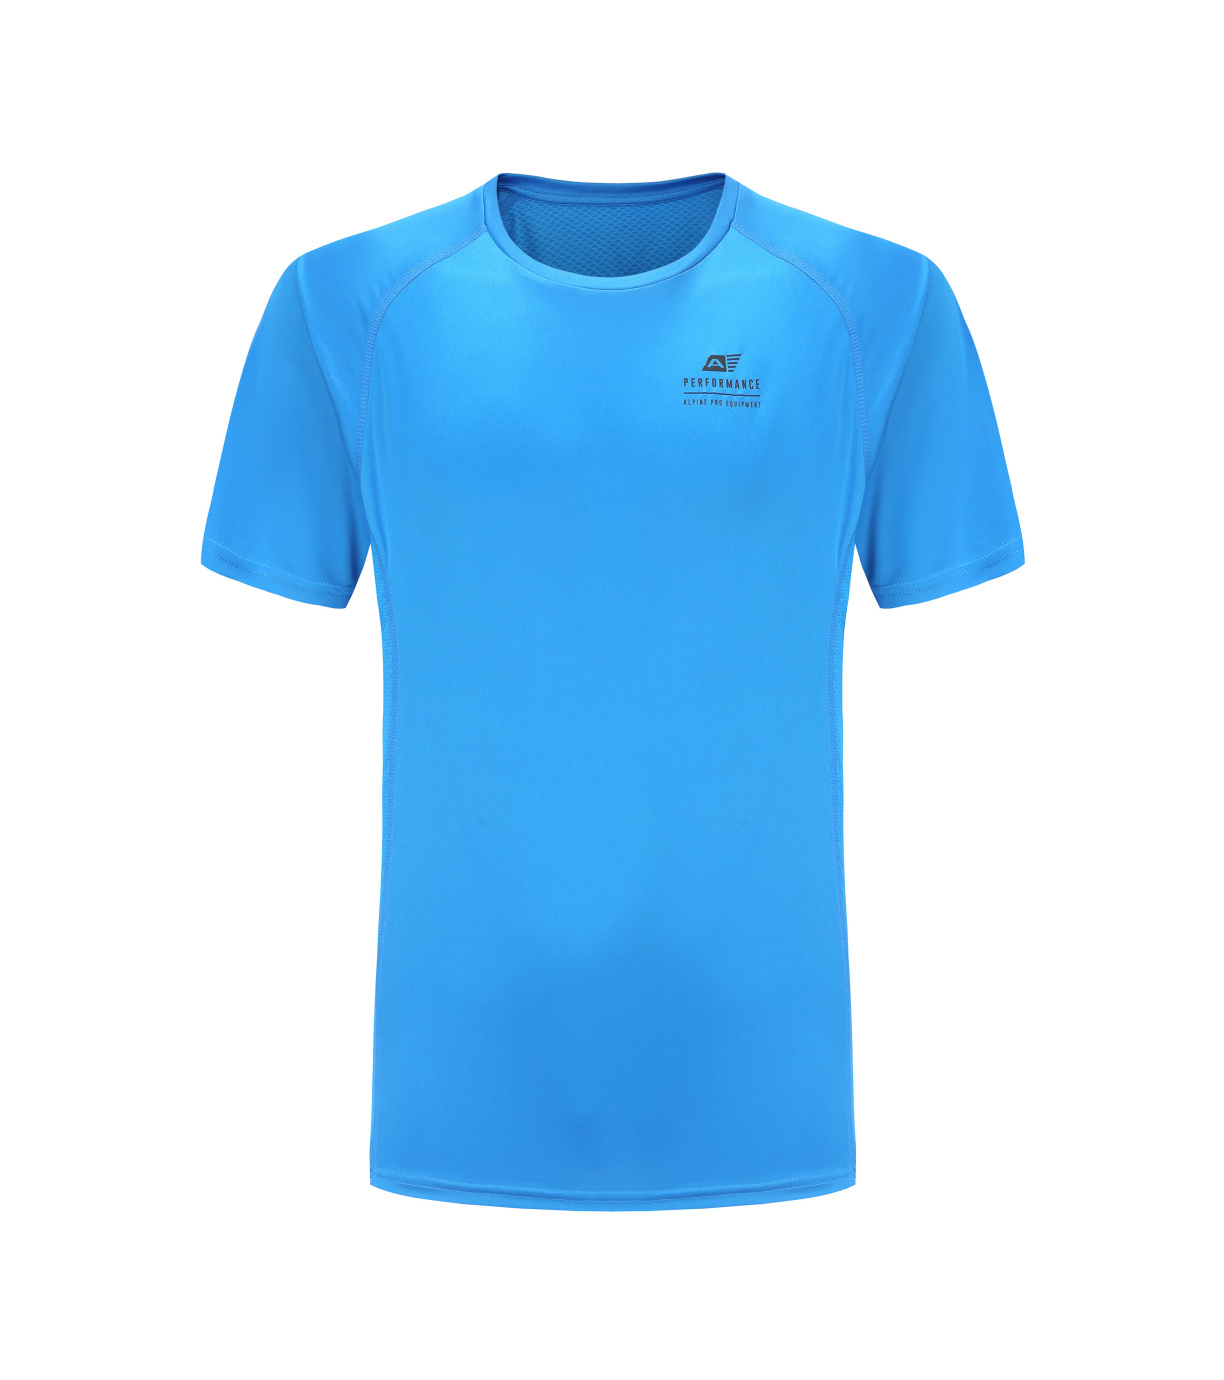 Pánské funkční triko MELOC ALPINE PRO cobalt blue